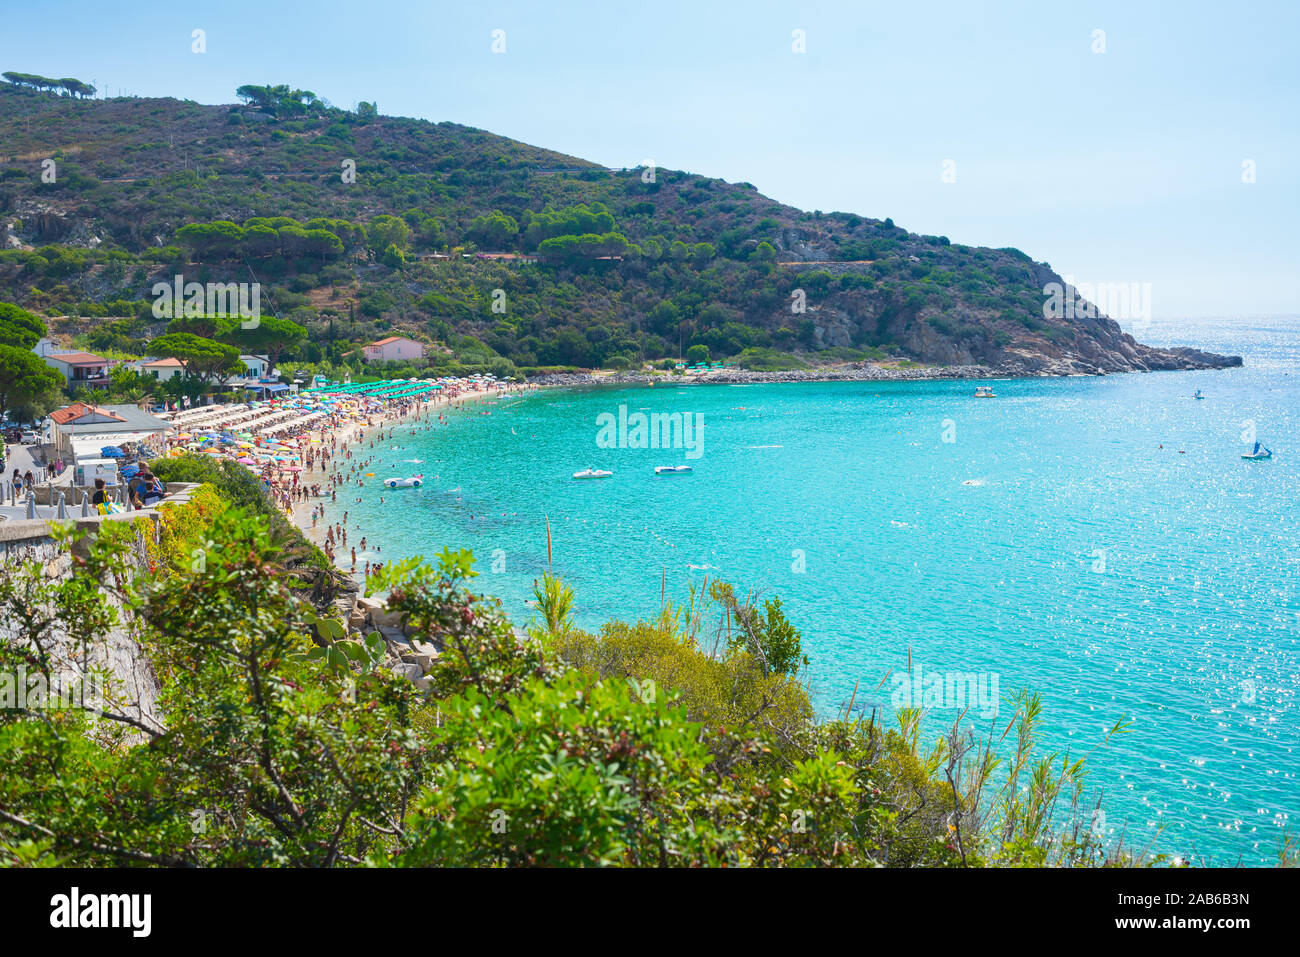 Vista del famoso Cavoli Beach en la Isla de Elba, Toscana, Italia Foto de stock